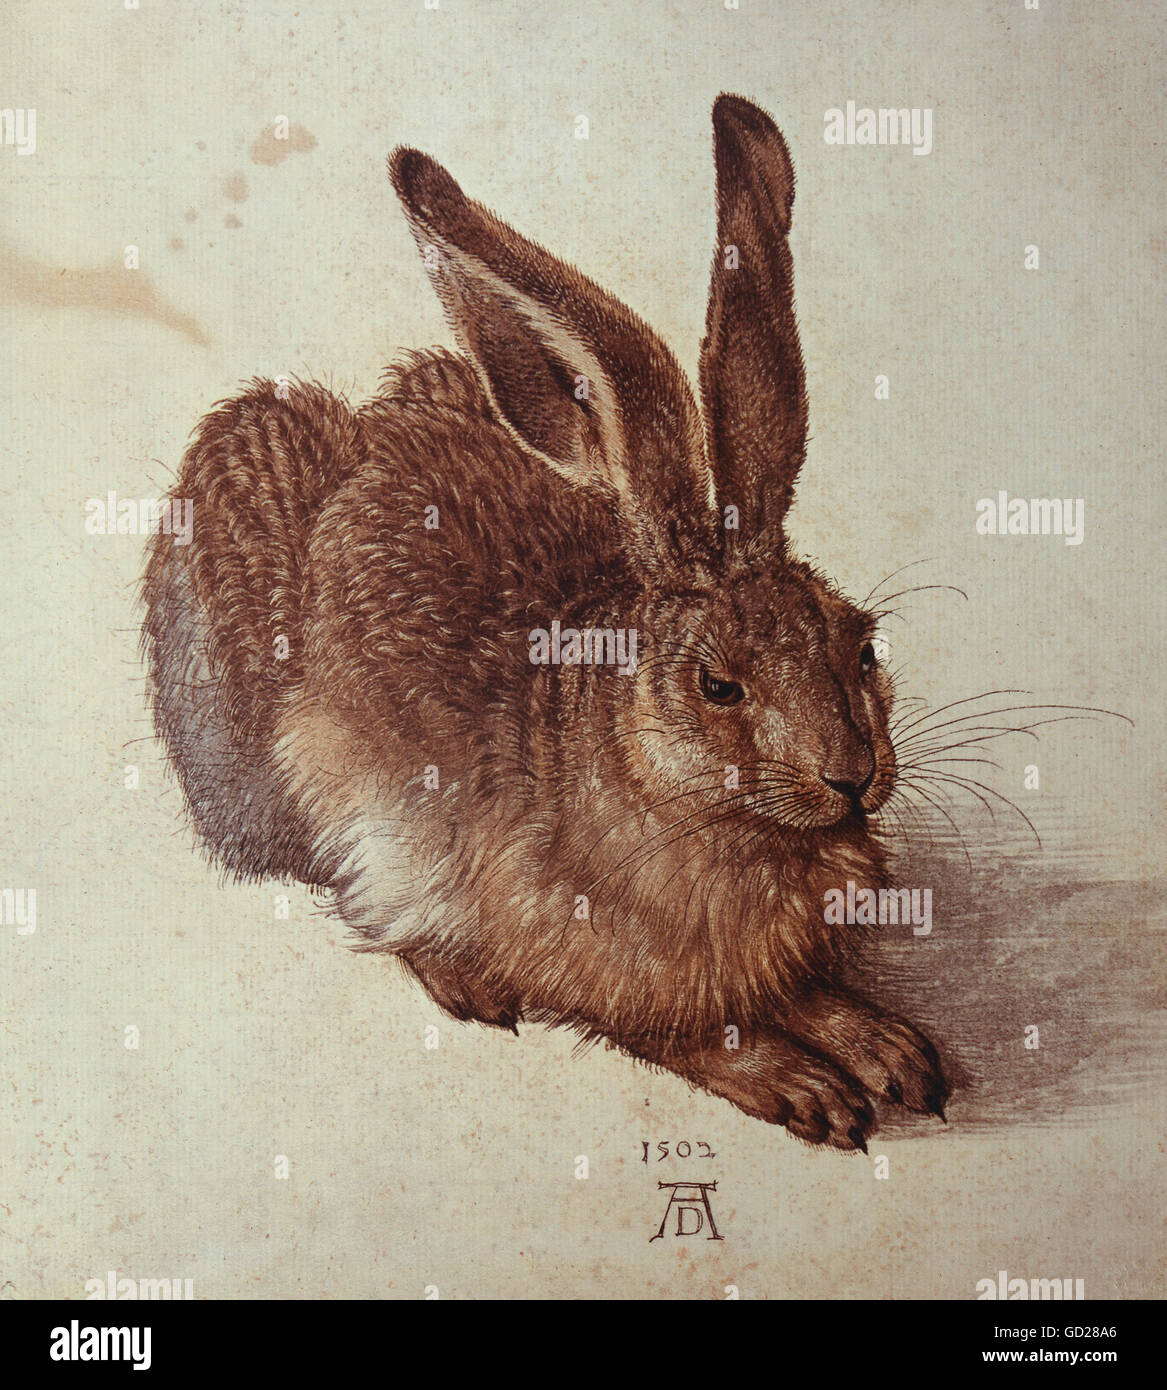 Bildende Kunst, Dürer, Albrecht (1471-1528), der Malerei, der Feldhase (junge Hasen), Aquarell, 25 x 22,5 cm, m 1502, Albertina, Wien Artist's Urheberrecht nicht geklärt zu werden. Stockfoto